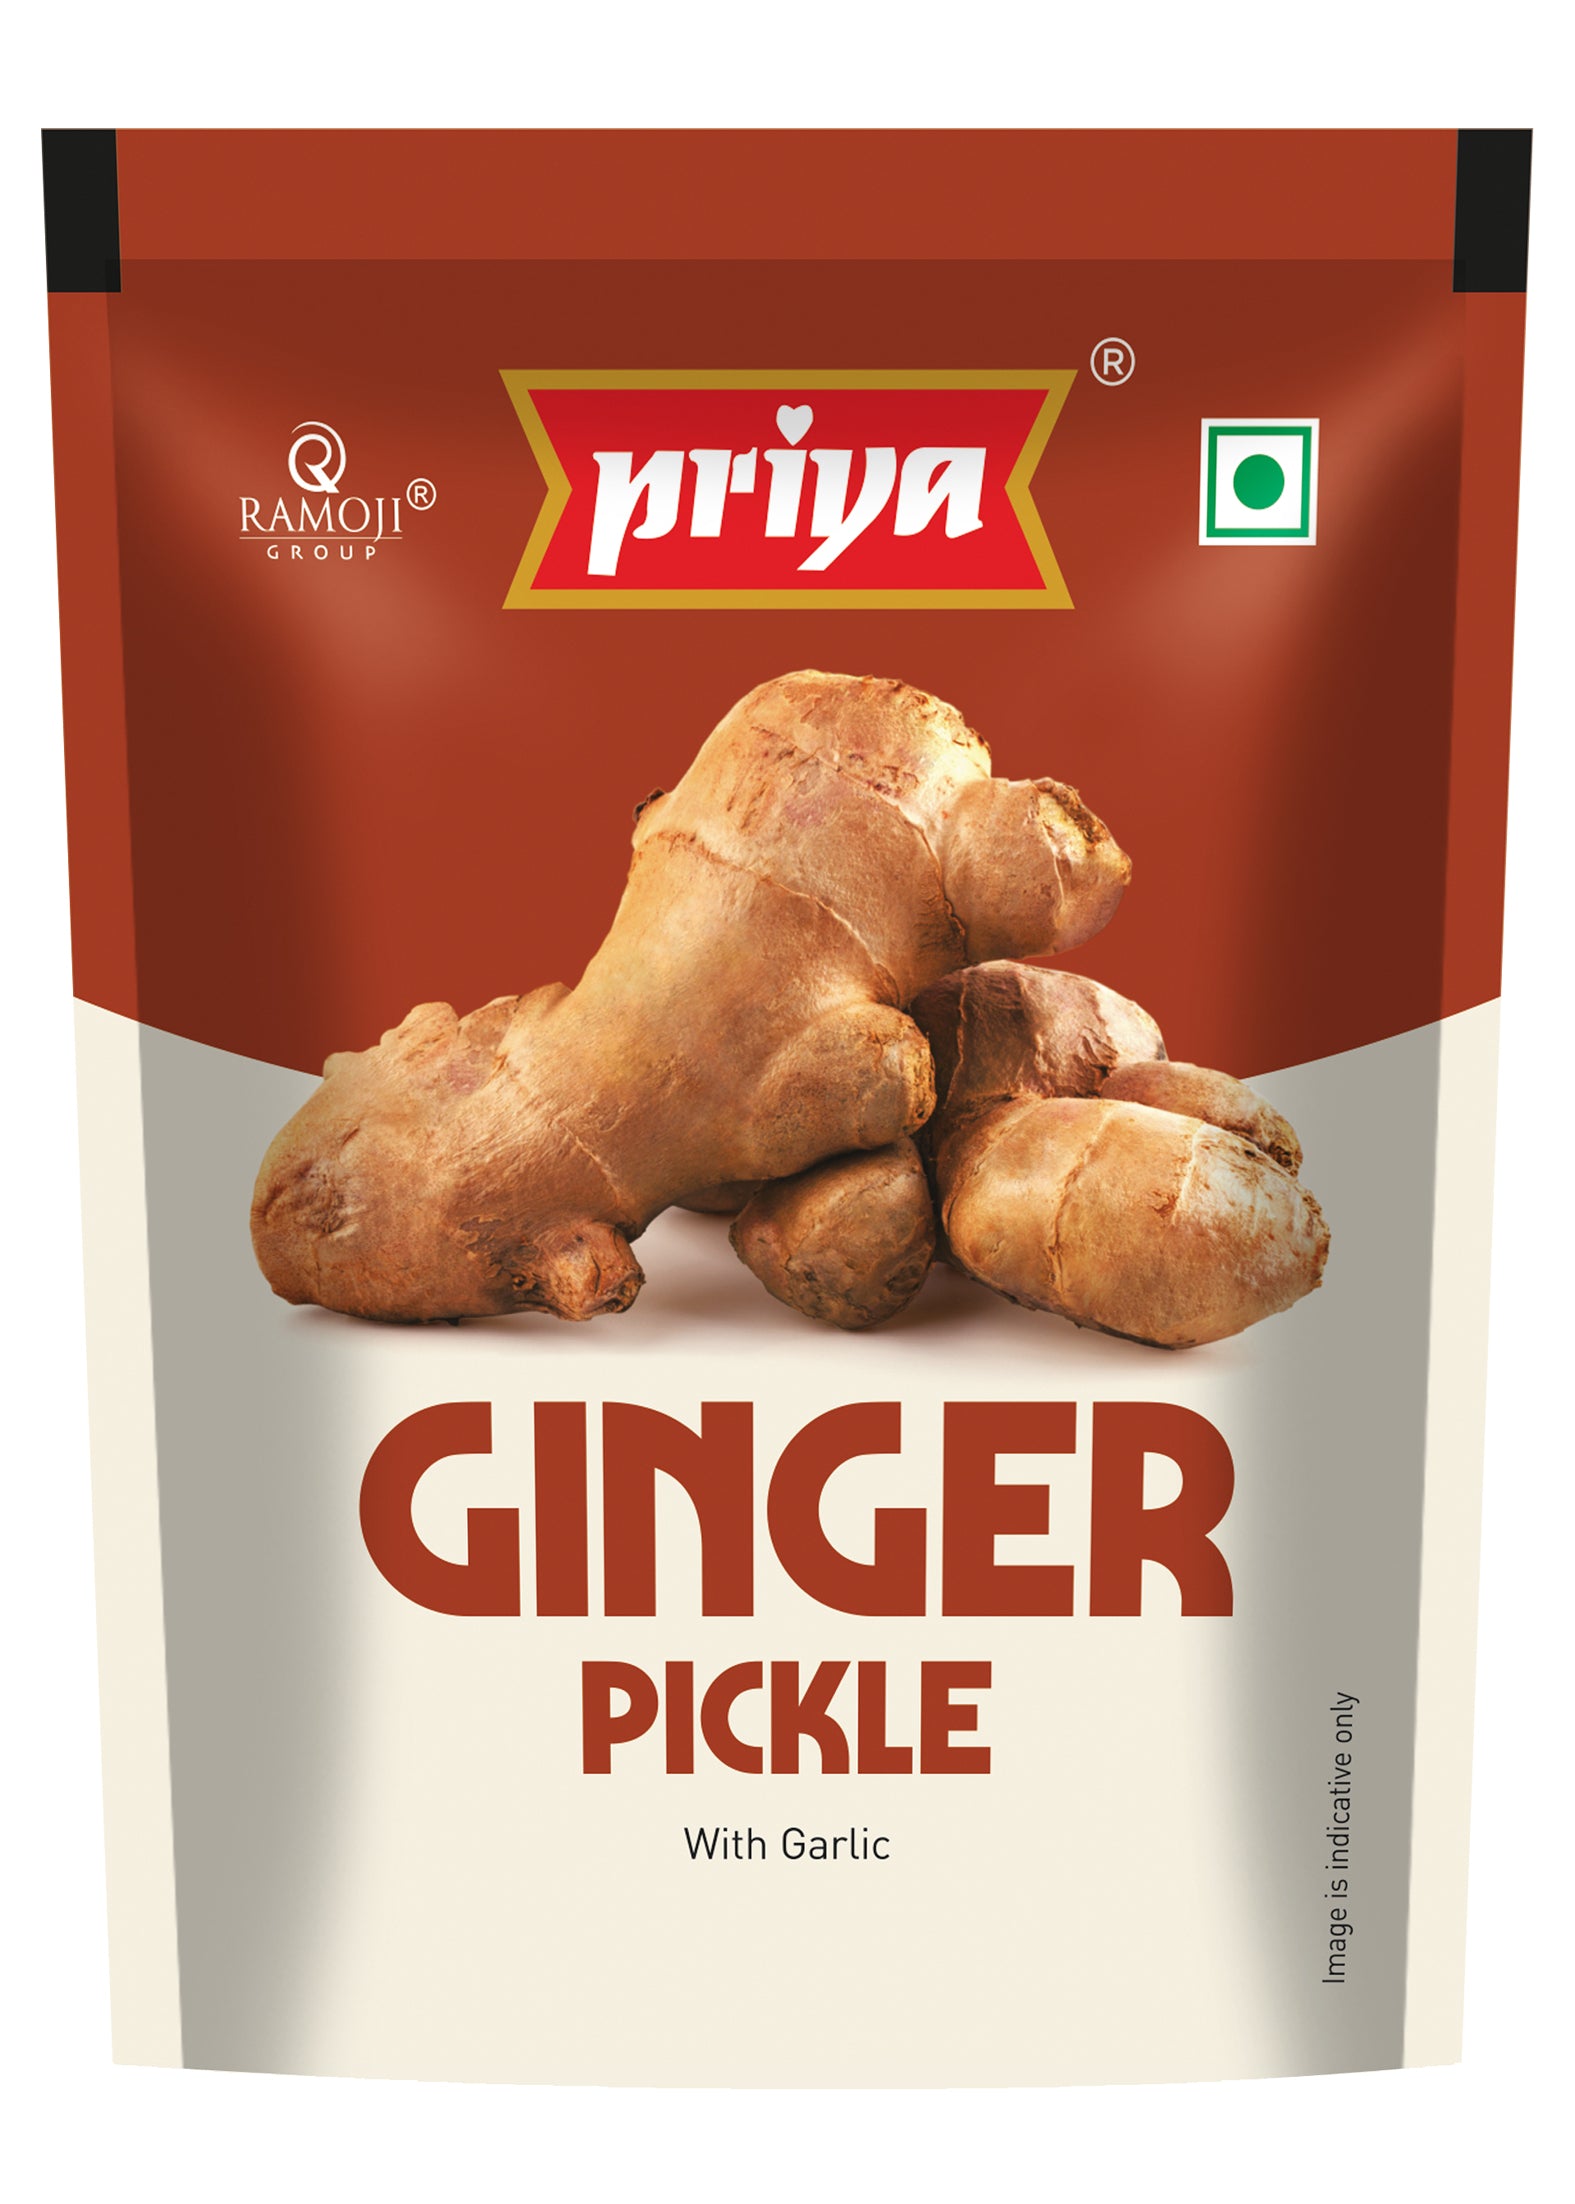 Ginger Pickle Buy Ginger Pickle Online Priya Foods